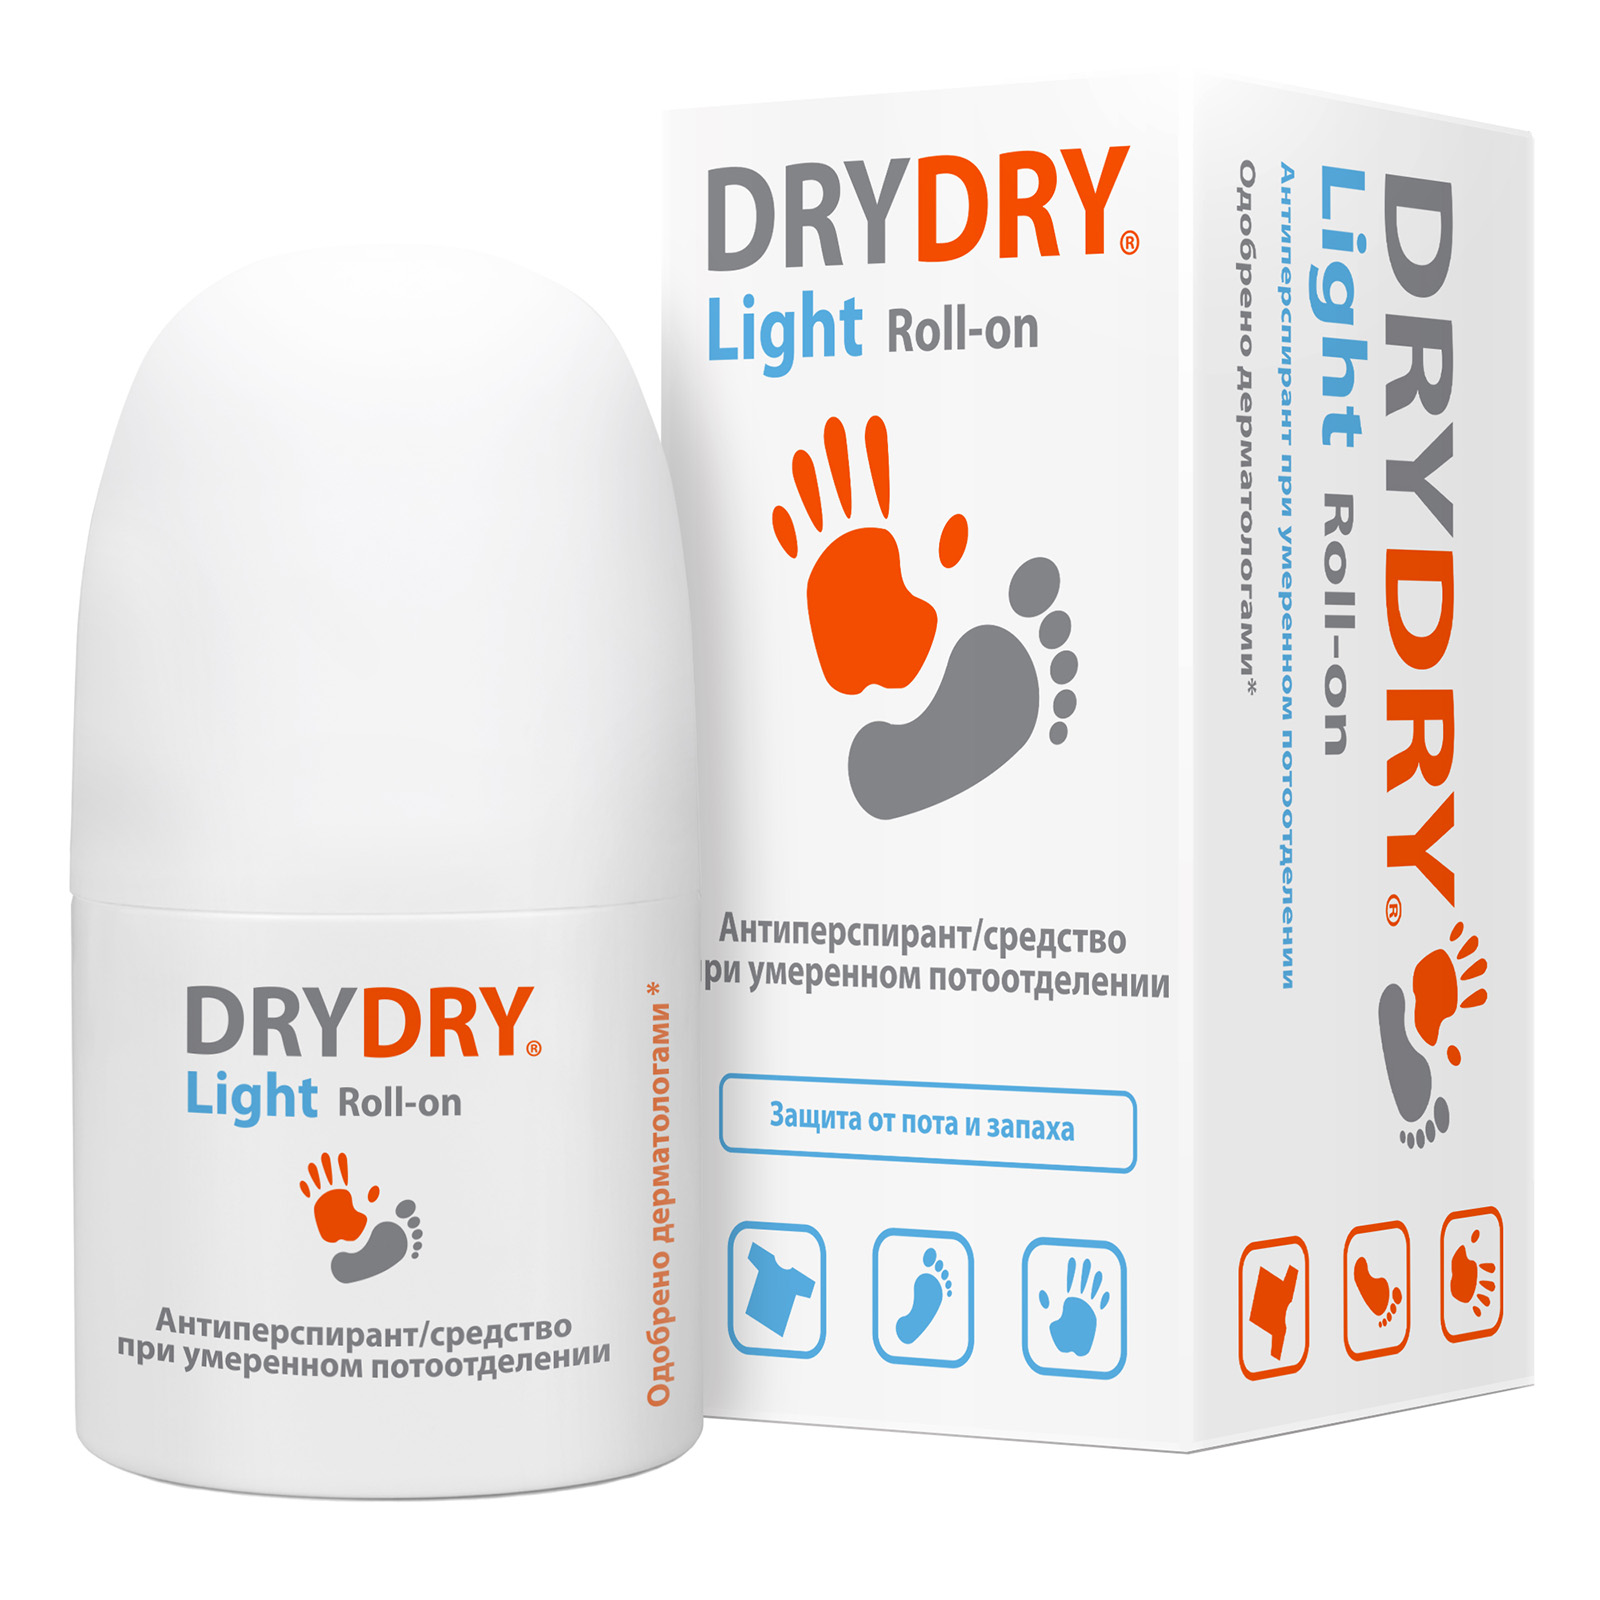 Dry Dry Средство от обильного потоотделения, 50 мл (Dry Dry, Light) дабоматик от обильного потоотделения vitateka dry forte 20% спиртовой 50 мл